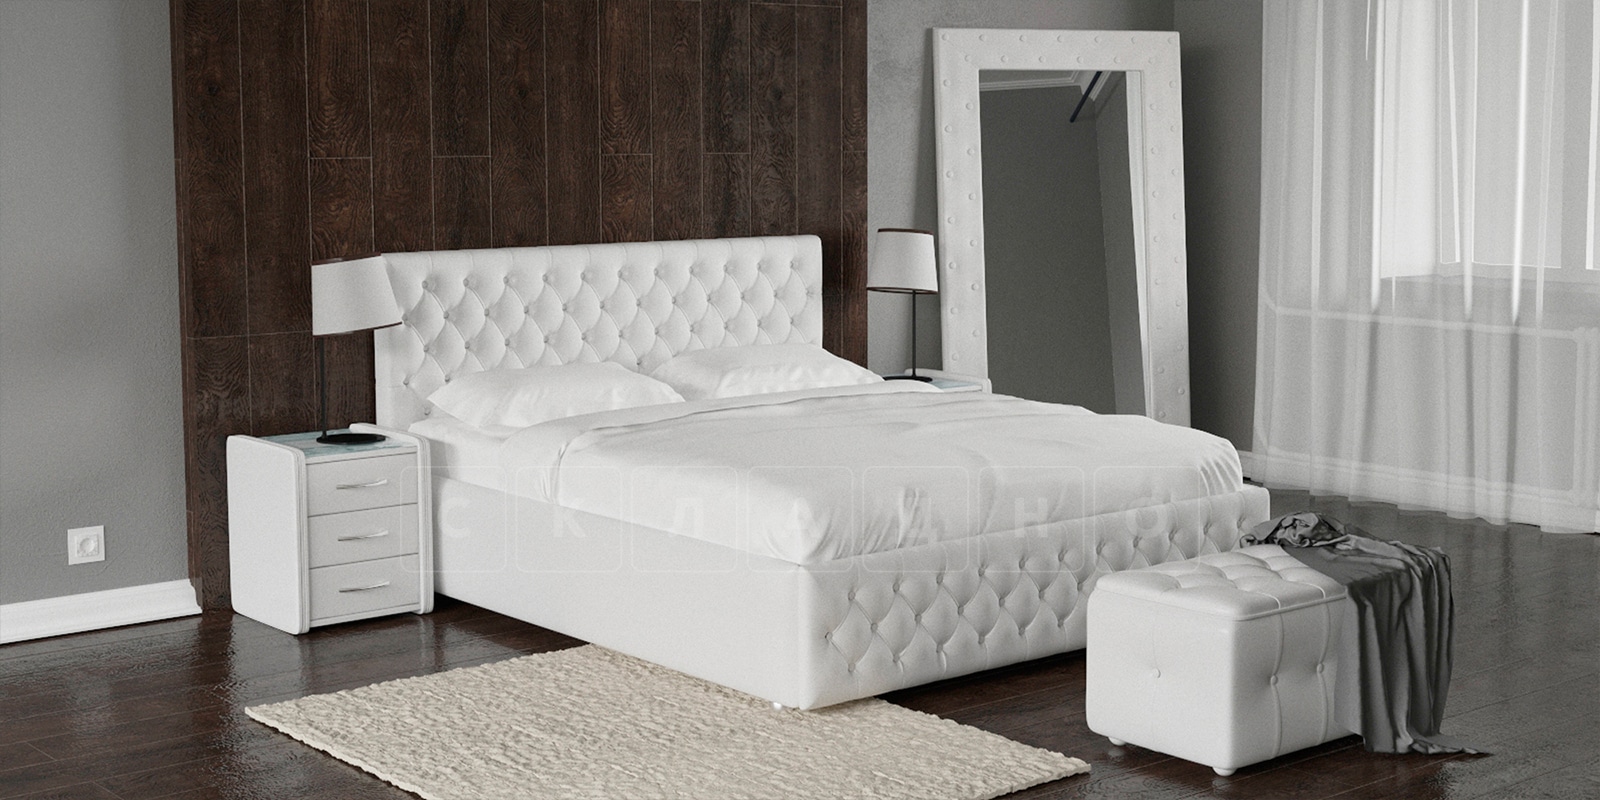 Мягкая кровать Малибу 160 см экокожа белого цвета вариант 4 фото 1 | интернет-магазин Складно